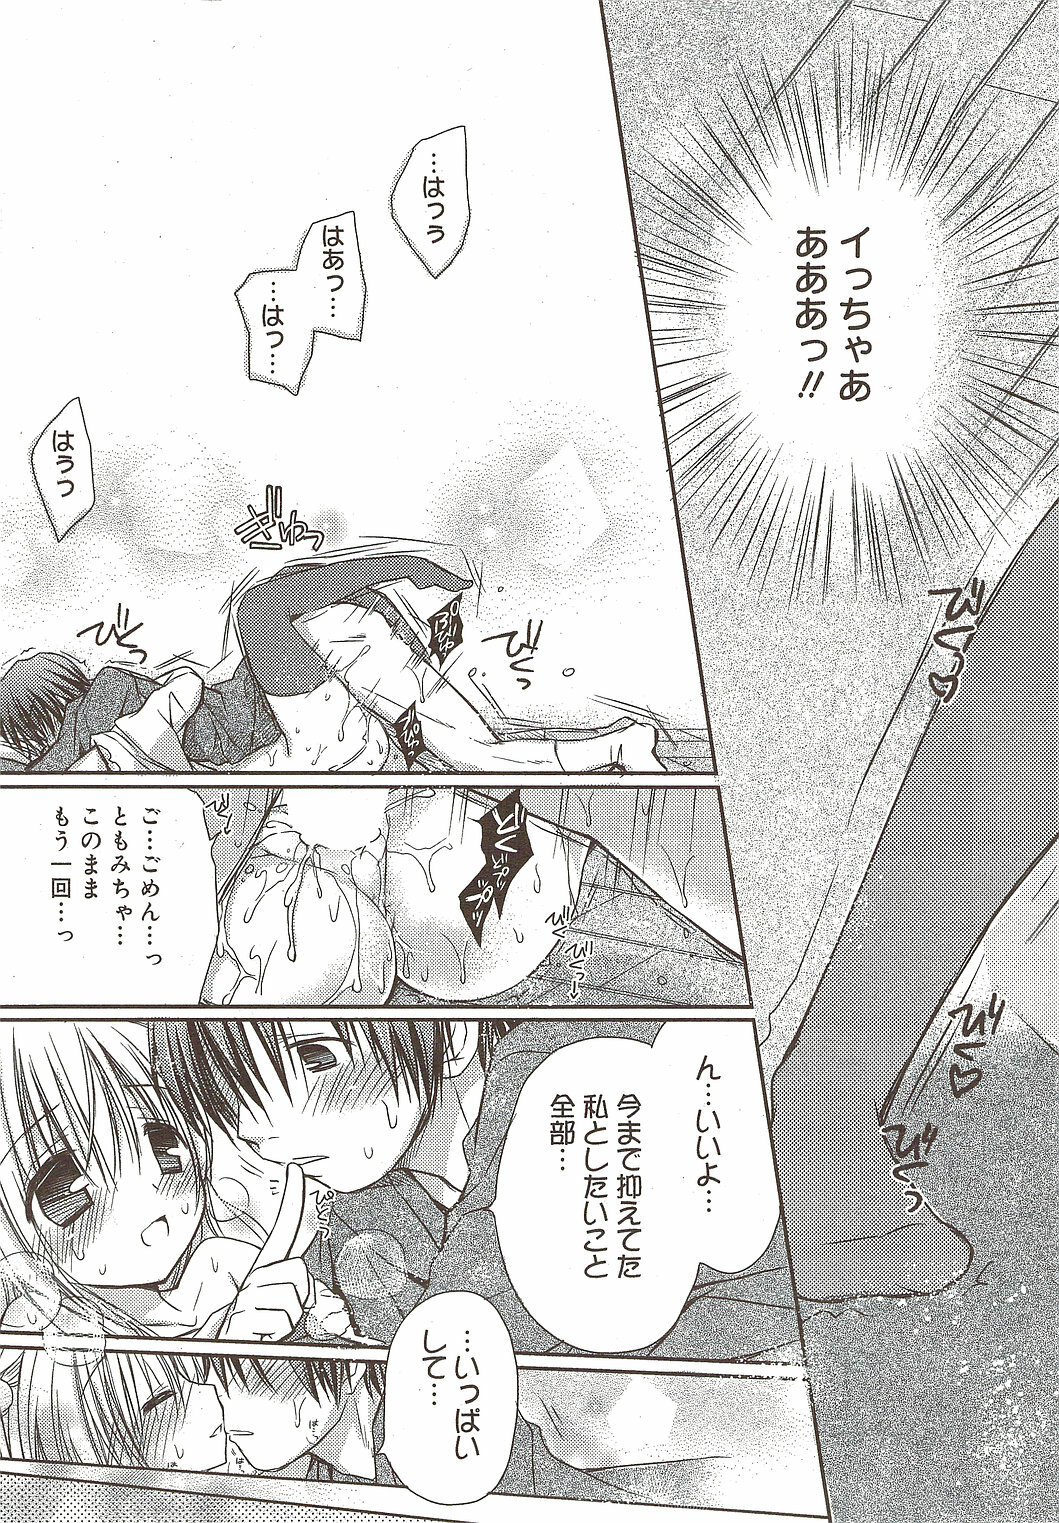 Manga Bangaichi 2010-01 page 21 full